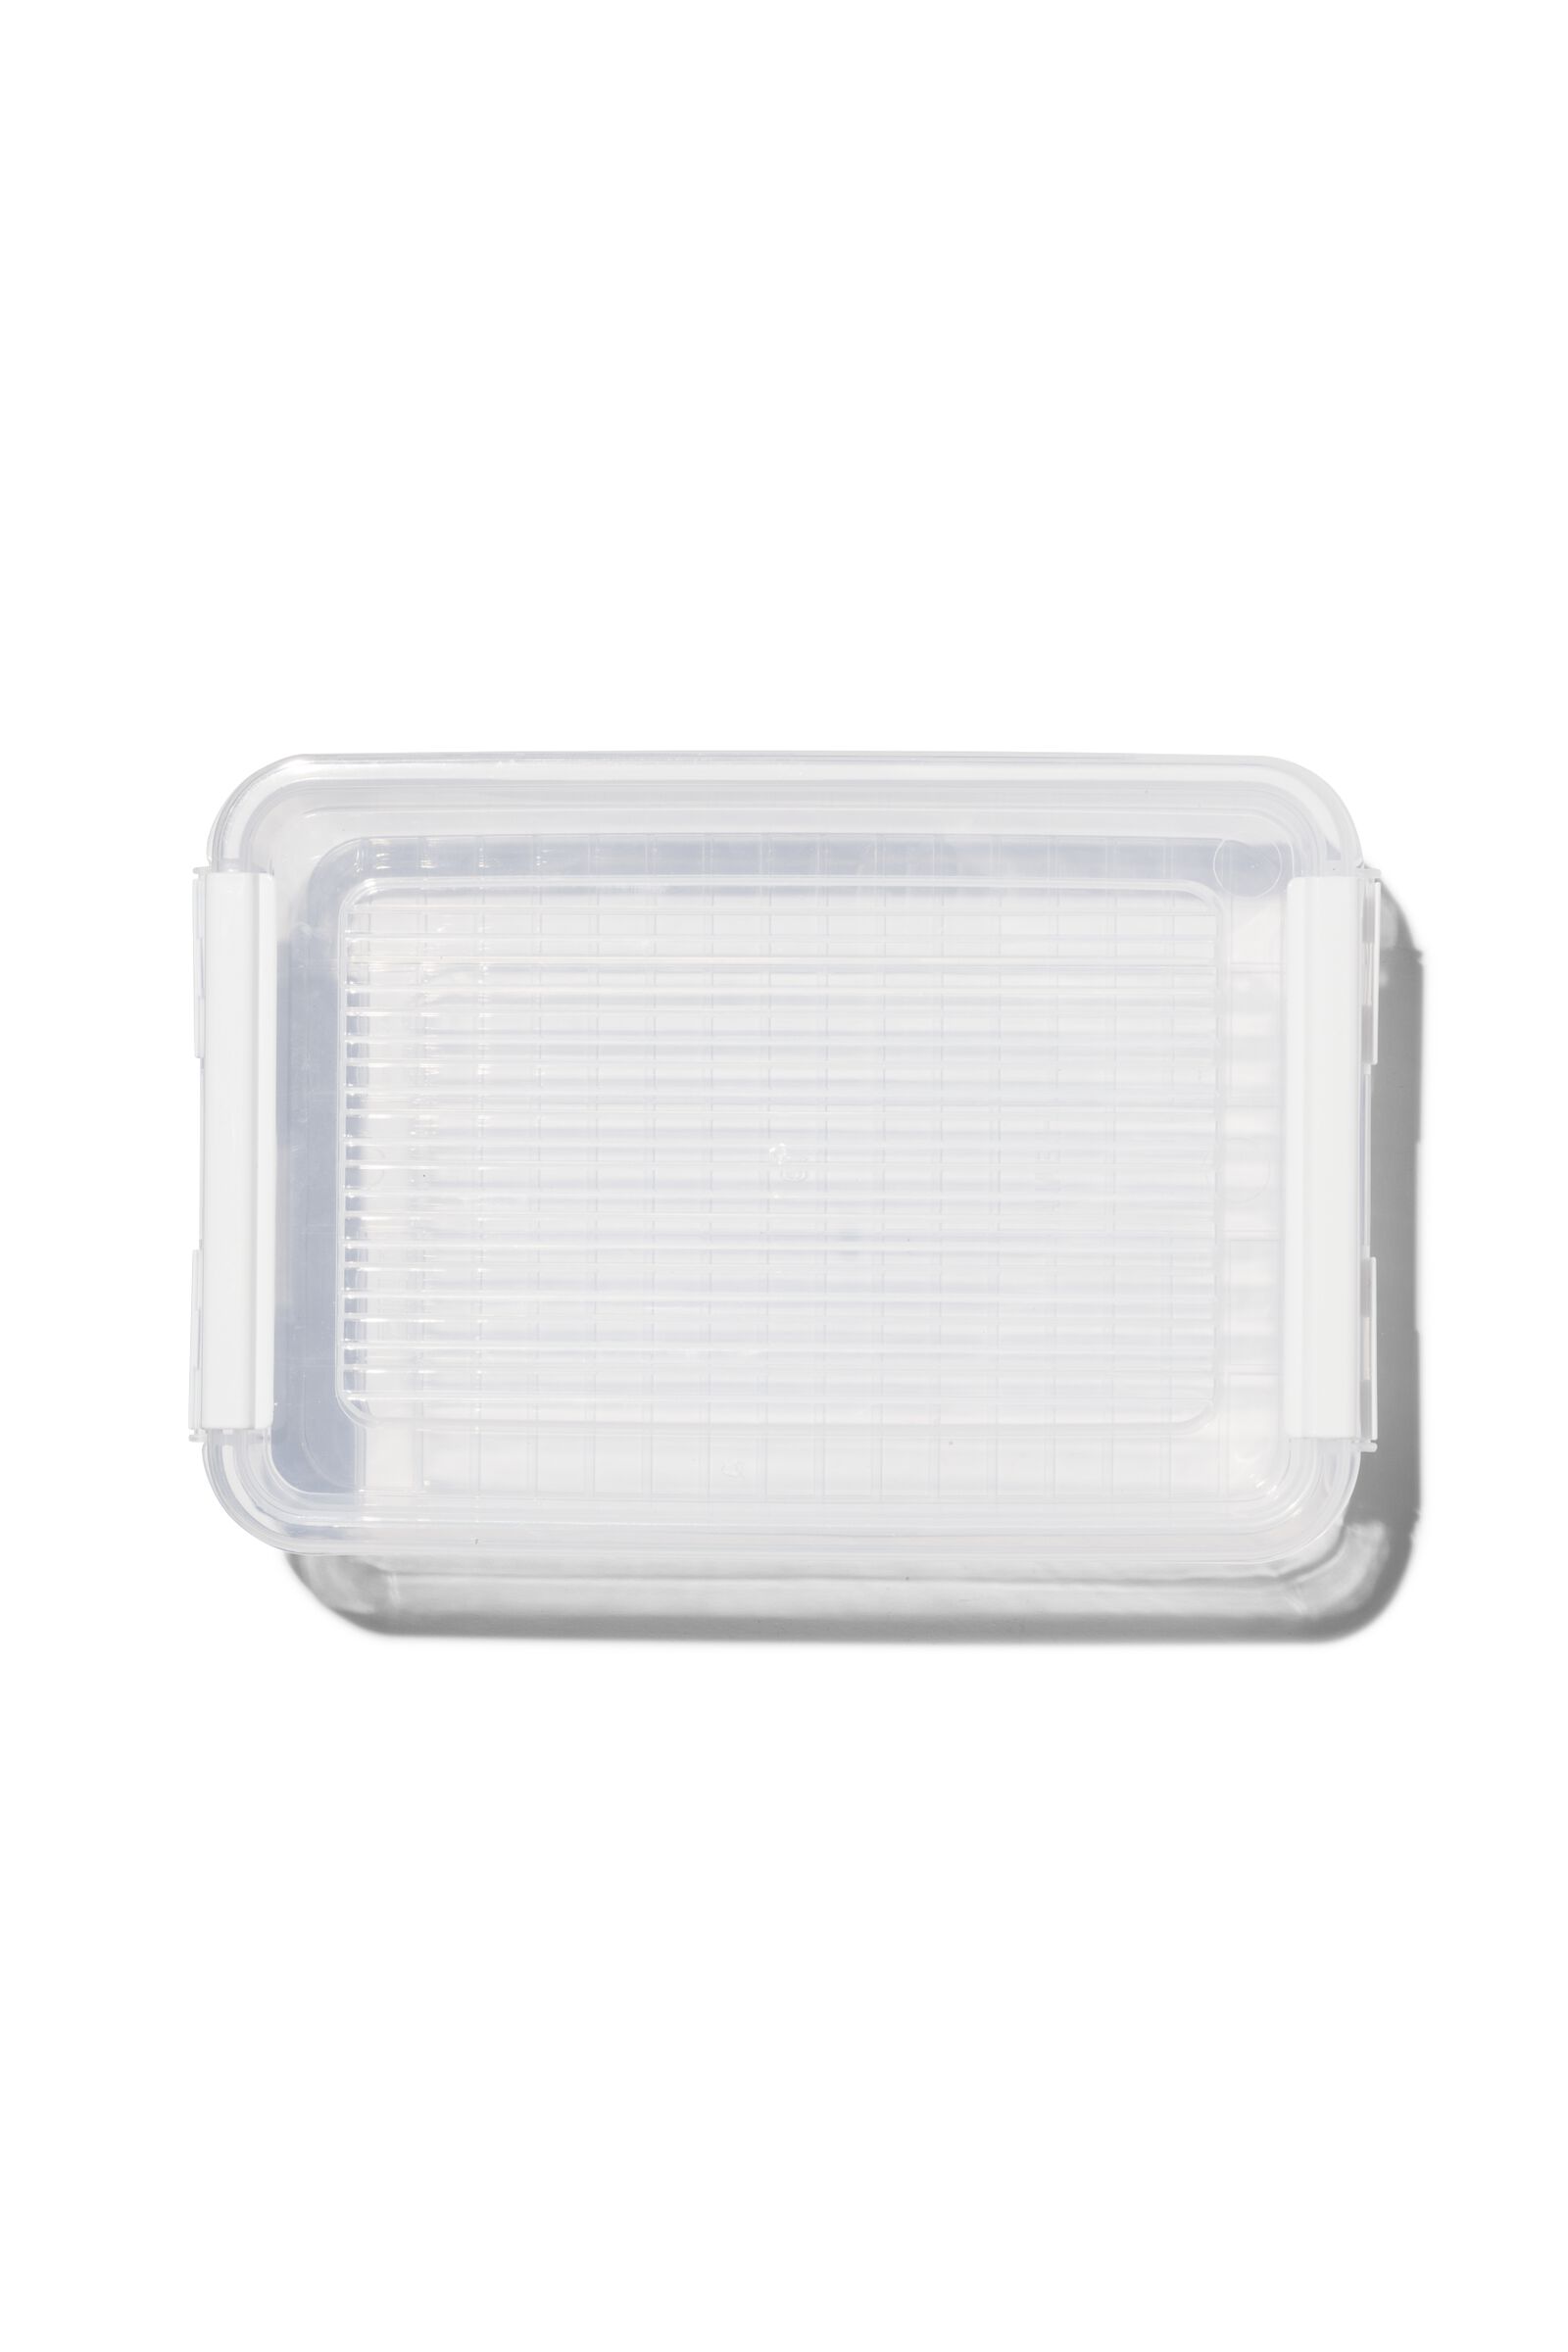 Petite boîte plastique plate transparente avec couvercle